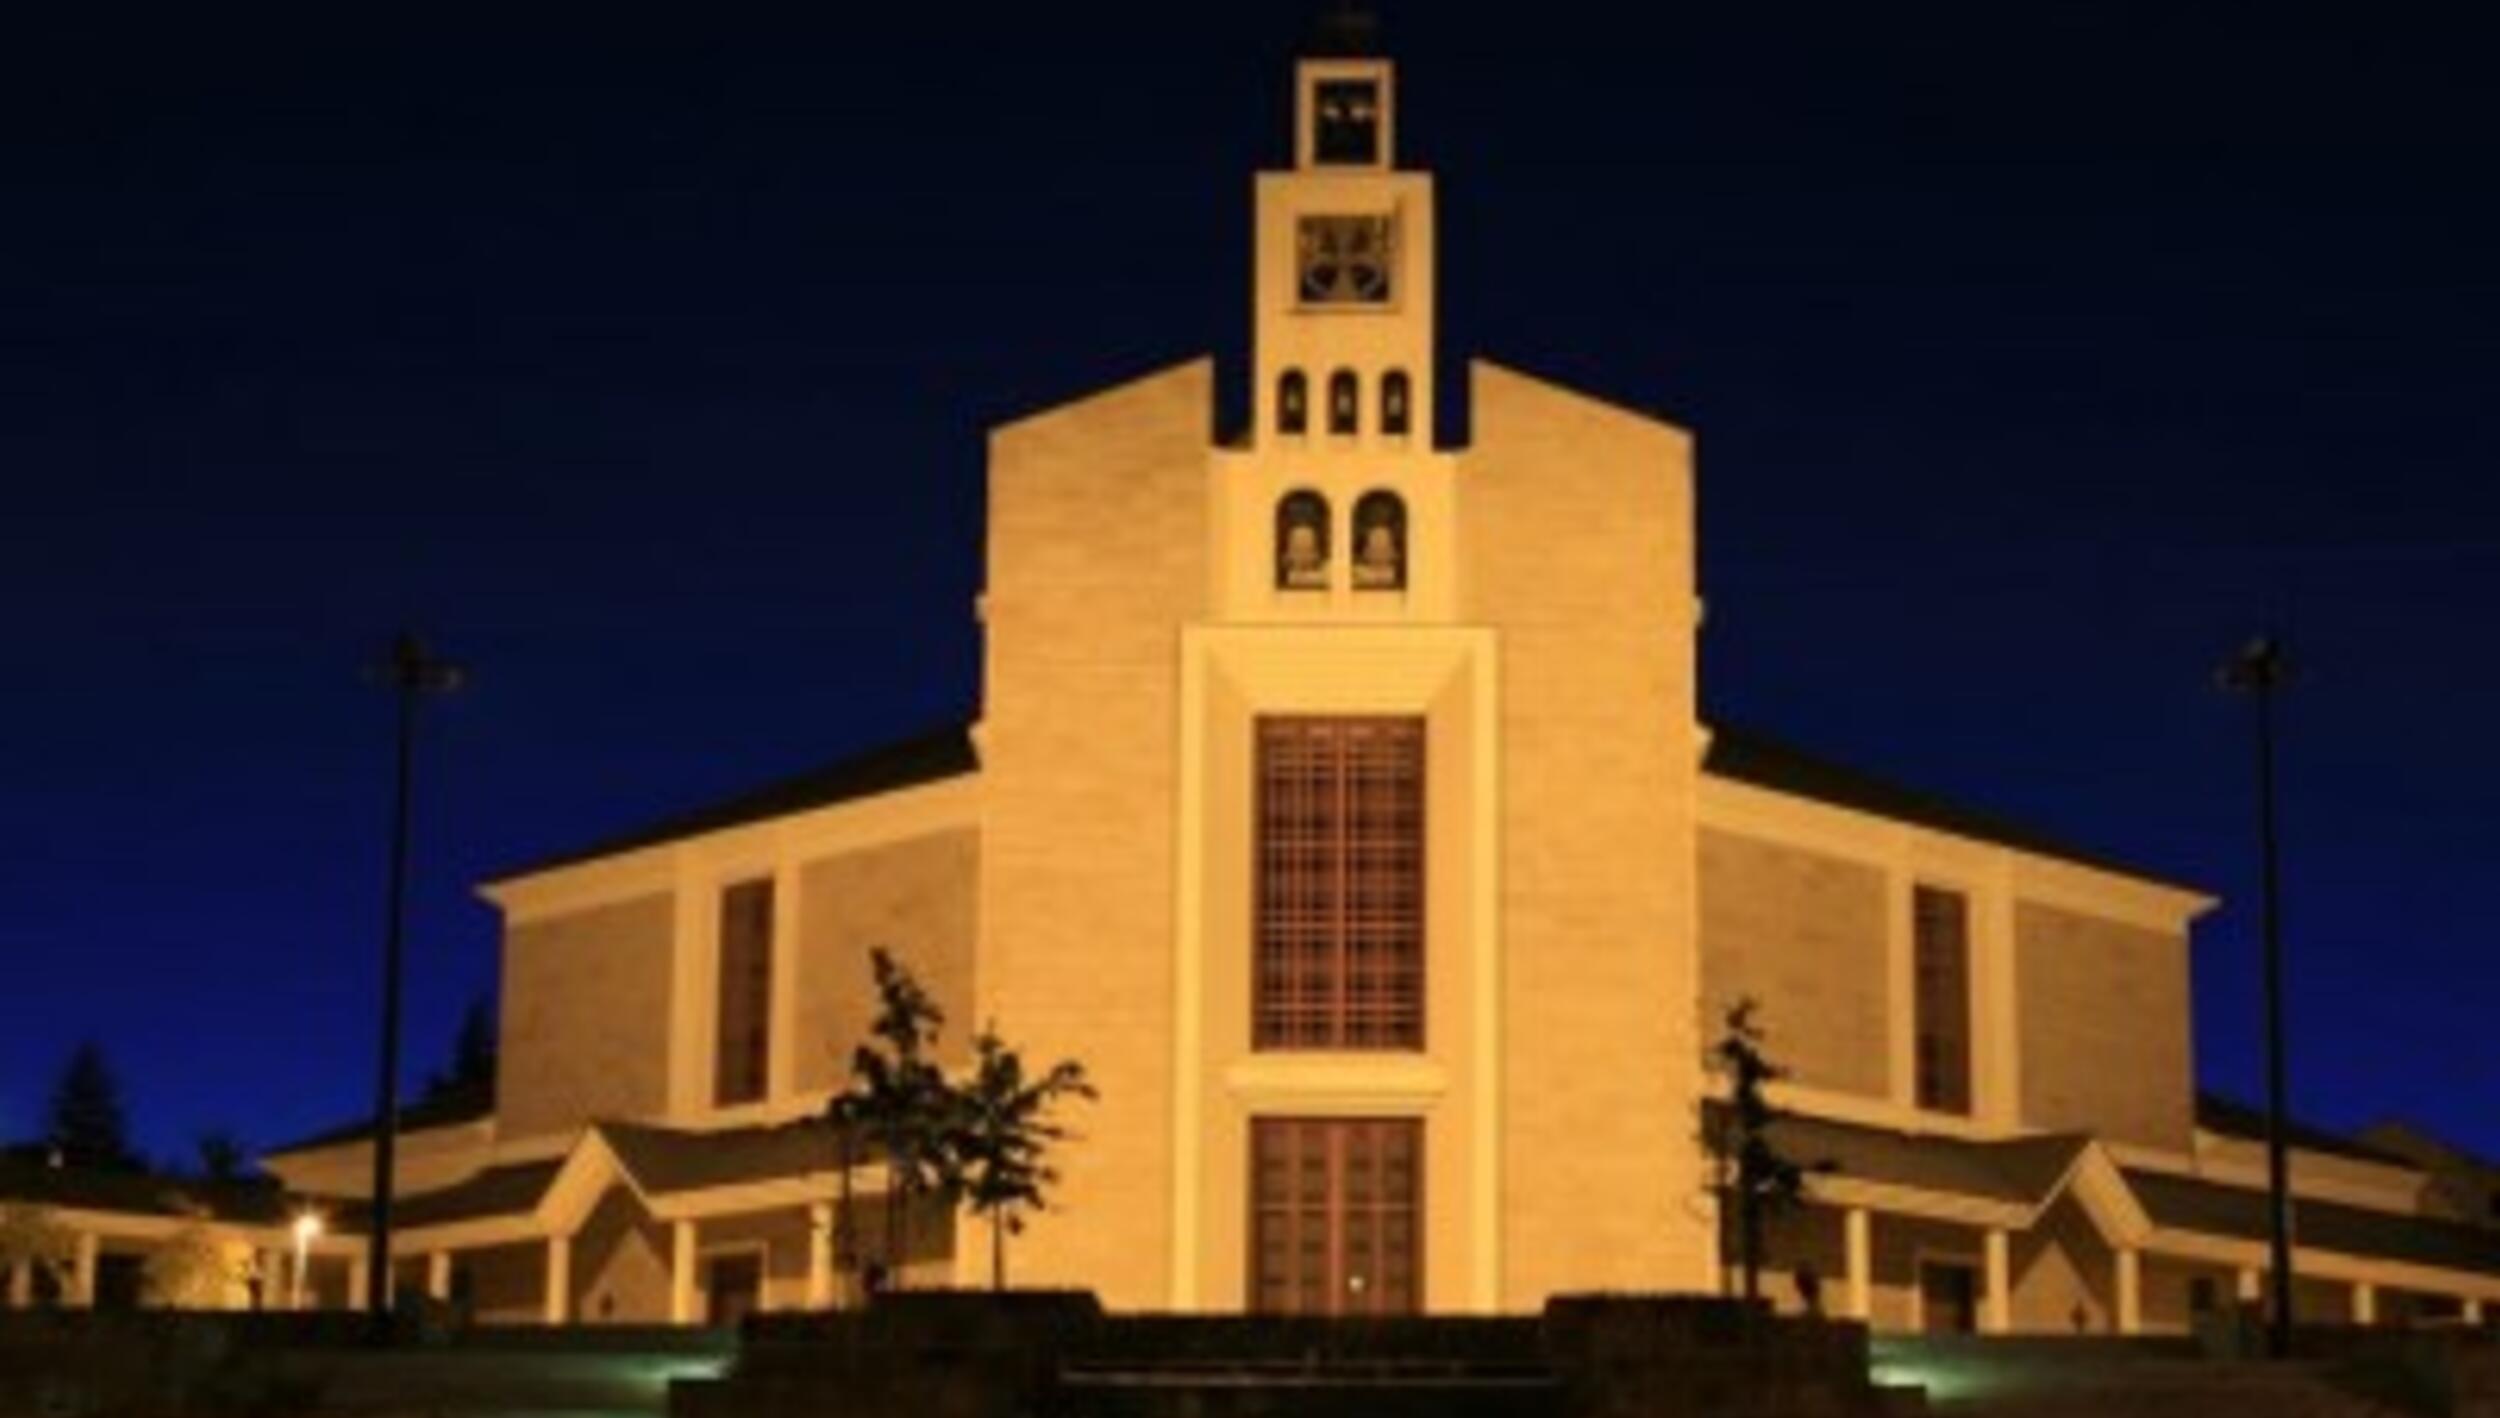 Catedral de Bragança (actual) / Igreja Catedral de Nossa Senhora Rainha